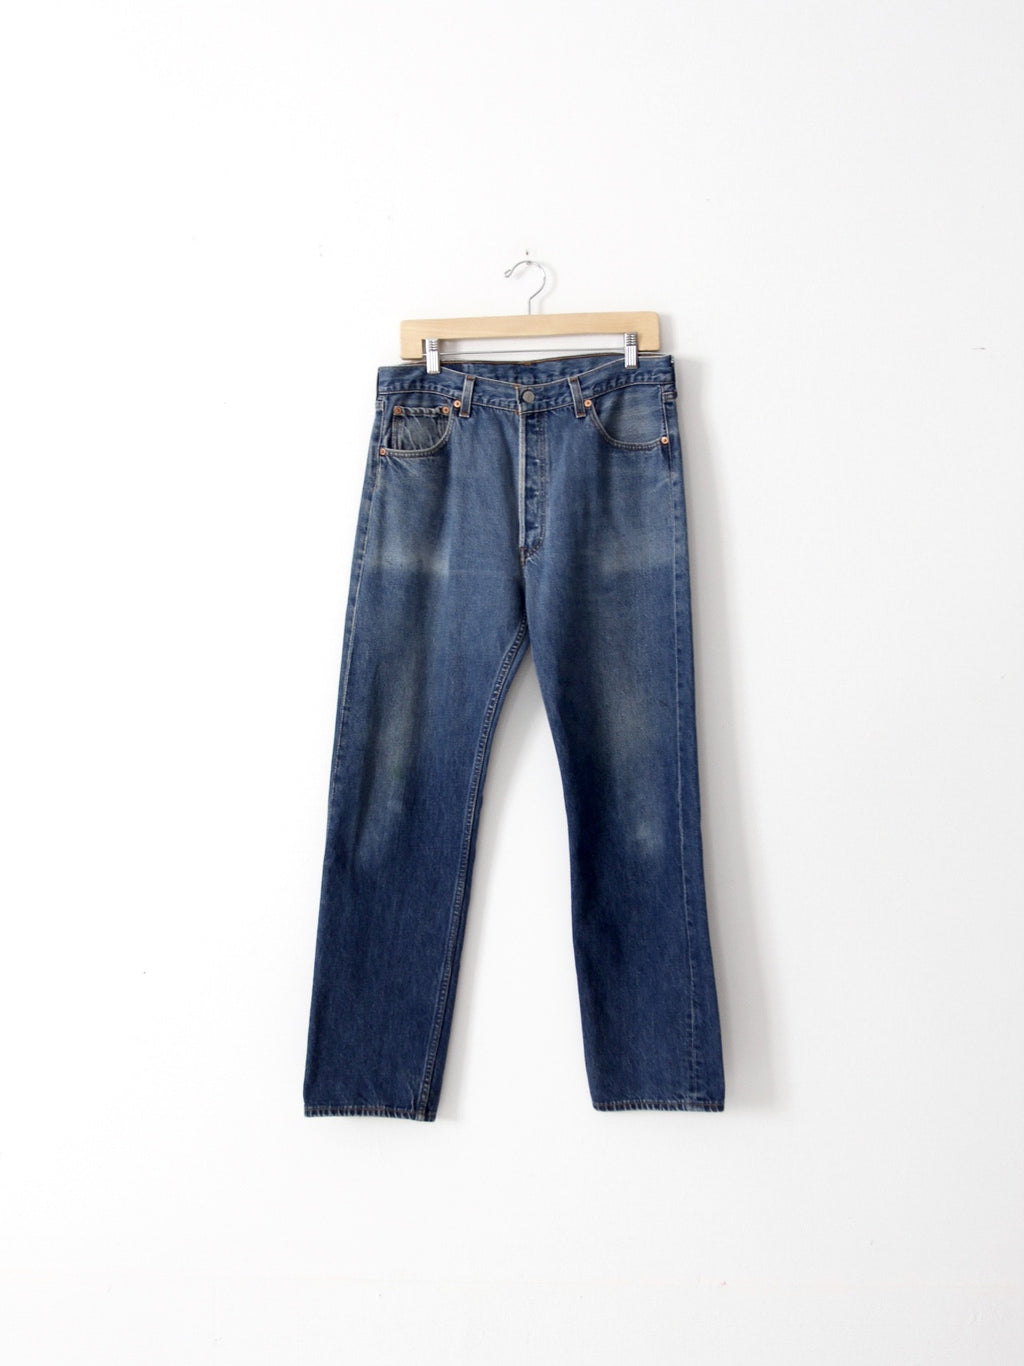 vintage Levi's 501xx denim jeans, 33 x 31 – 86 Vintage